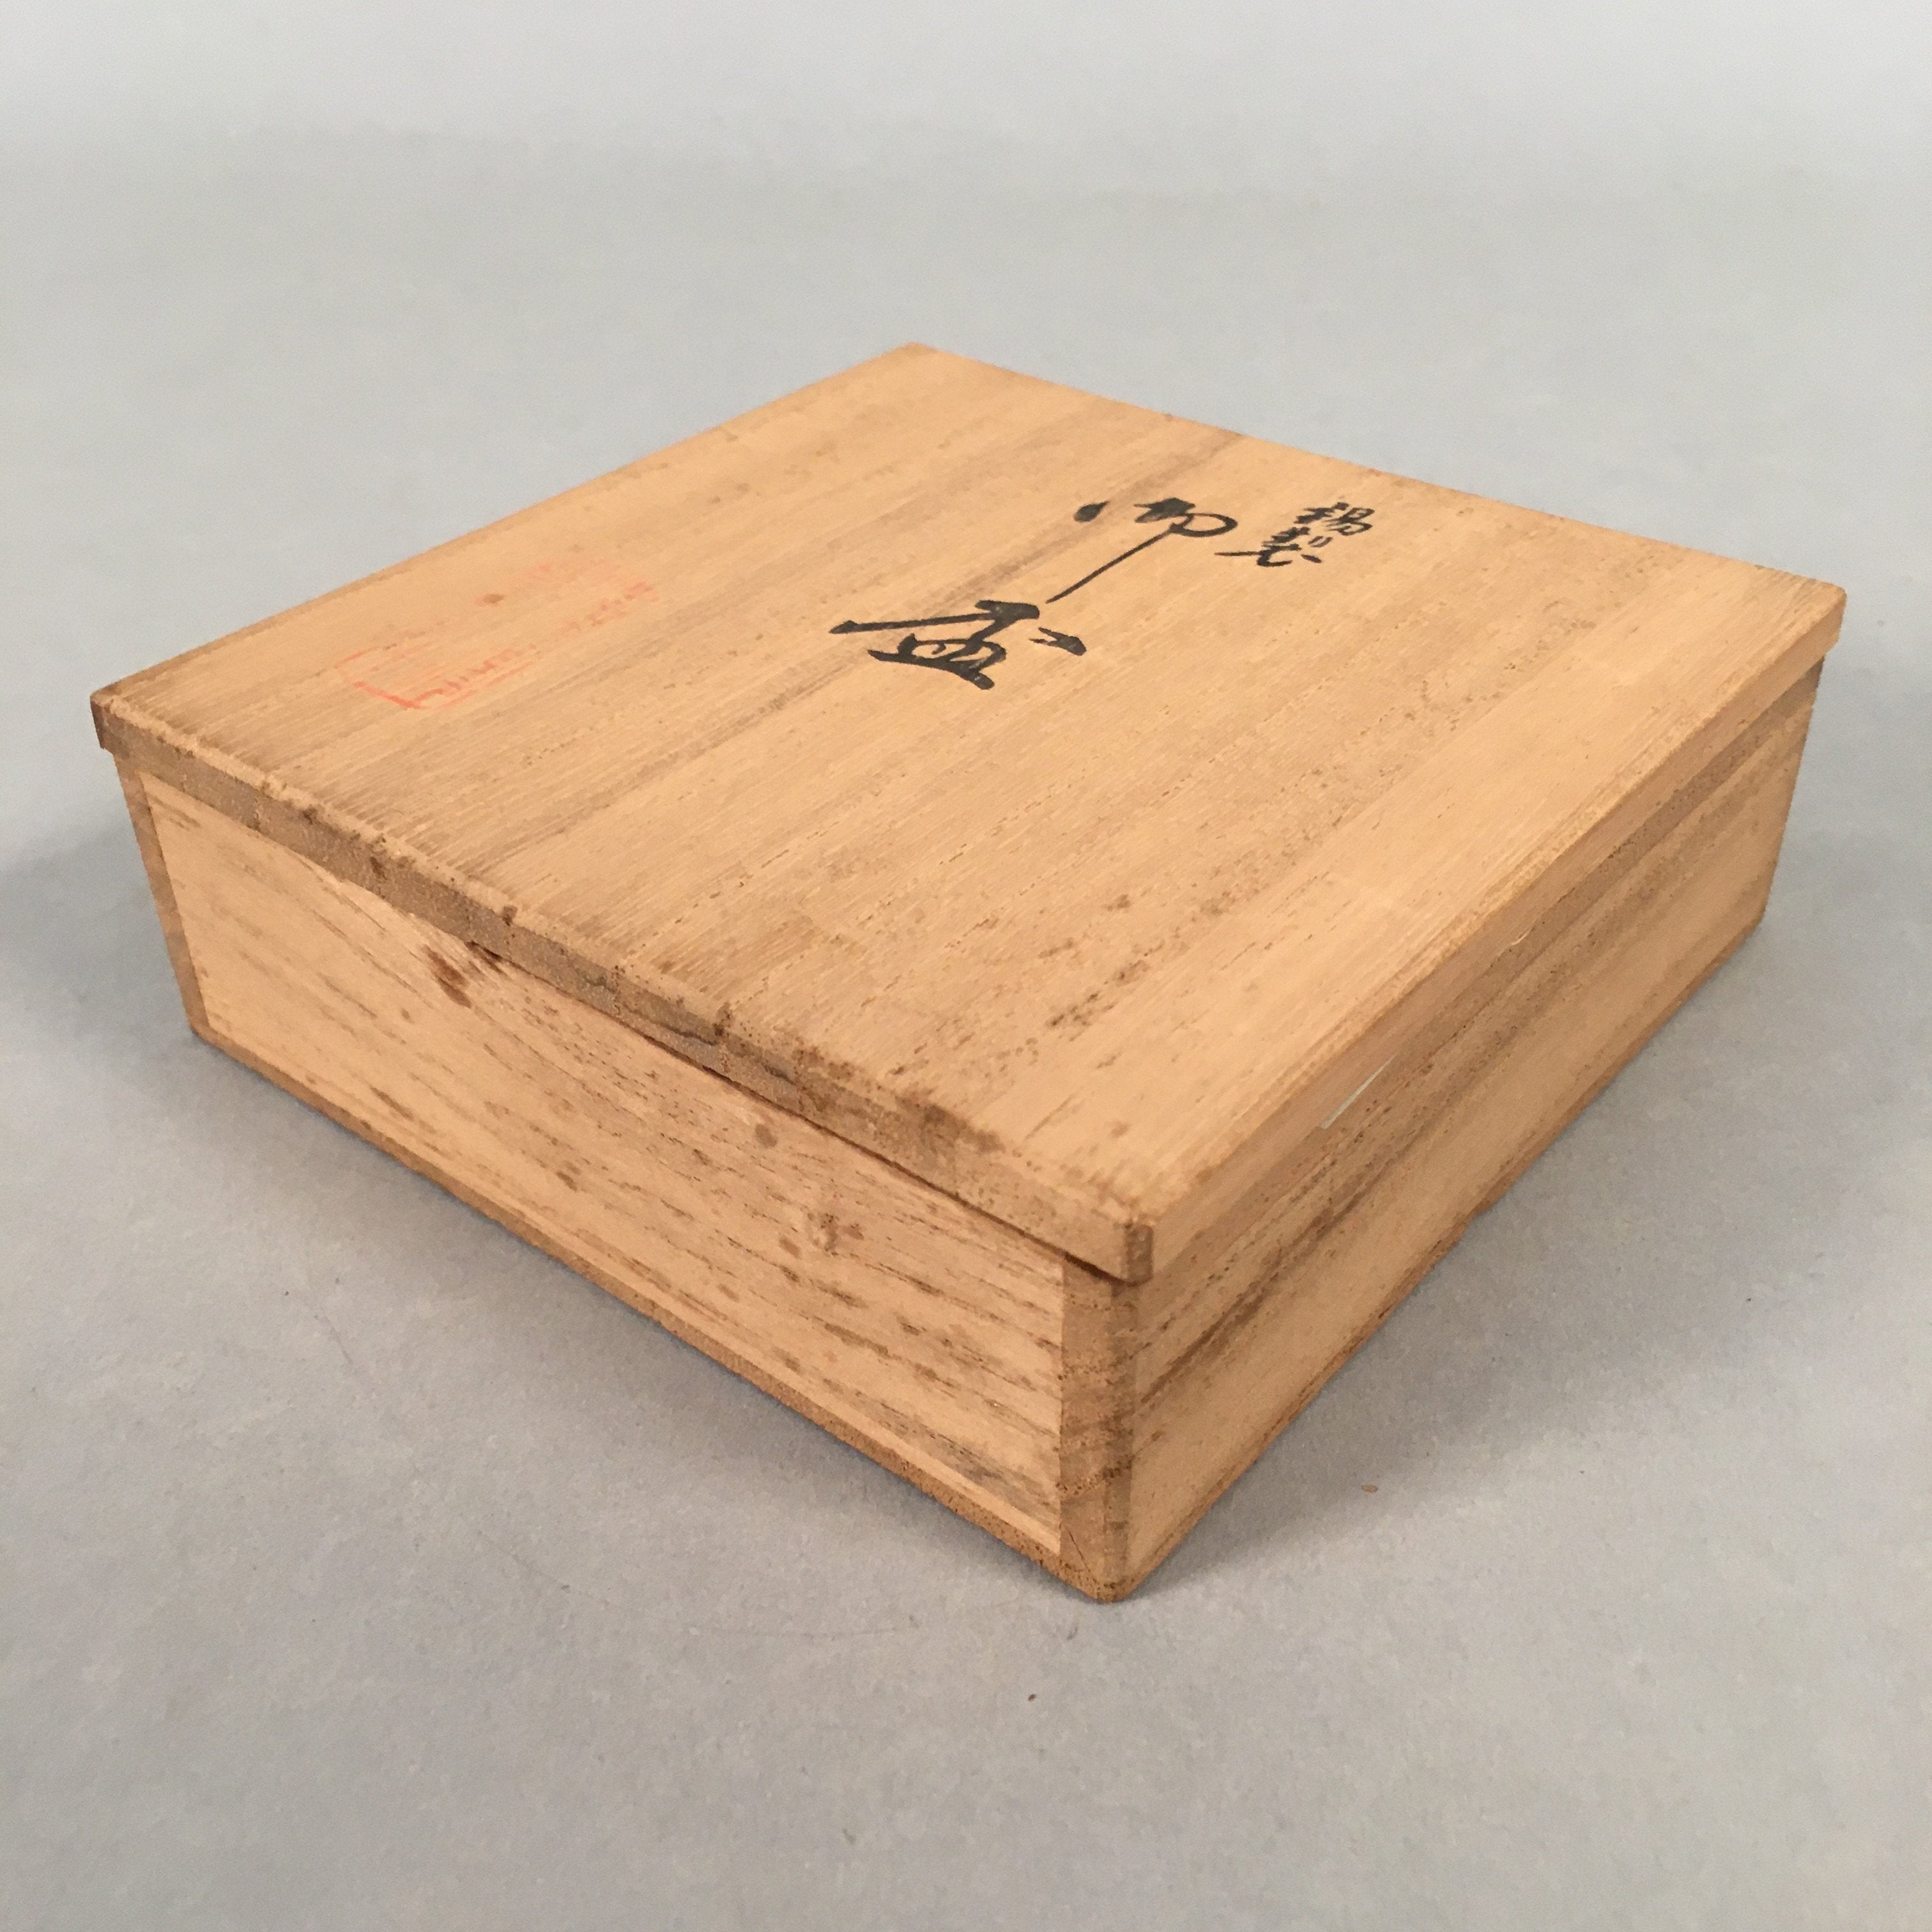 Japanese Pewter Sake Cup Set 5pc Vtg Box Sakazuki Guinomi Drinking Metal PX535